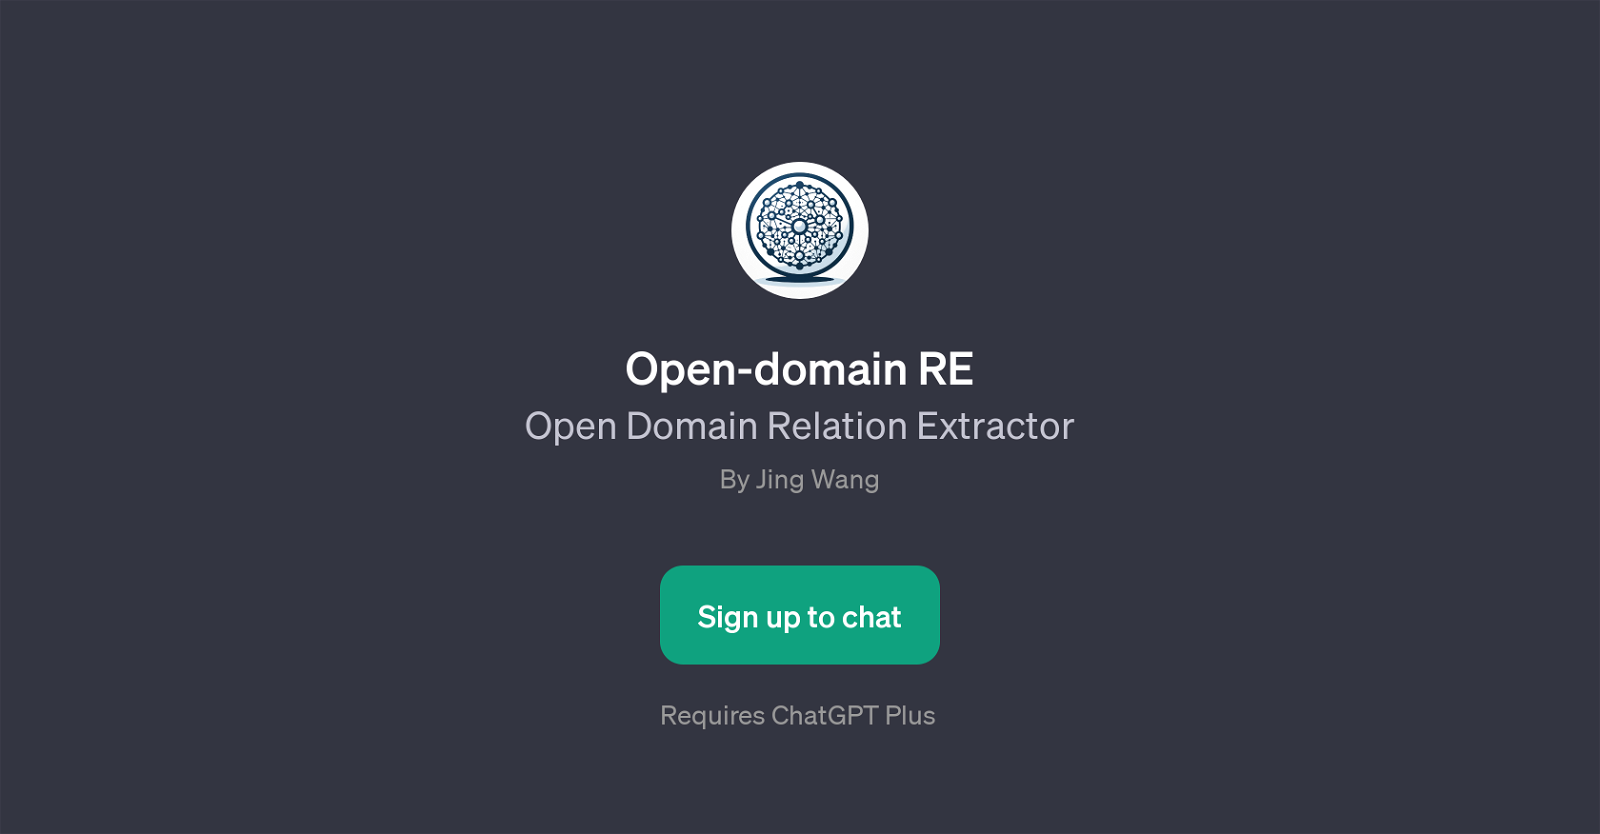 Open-domain RE website